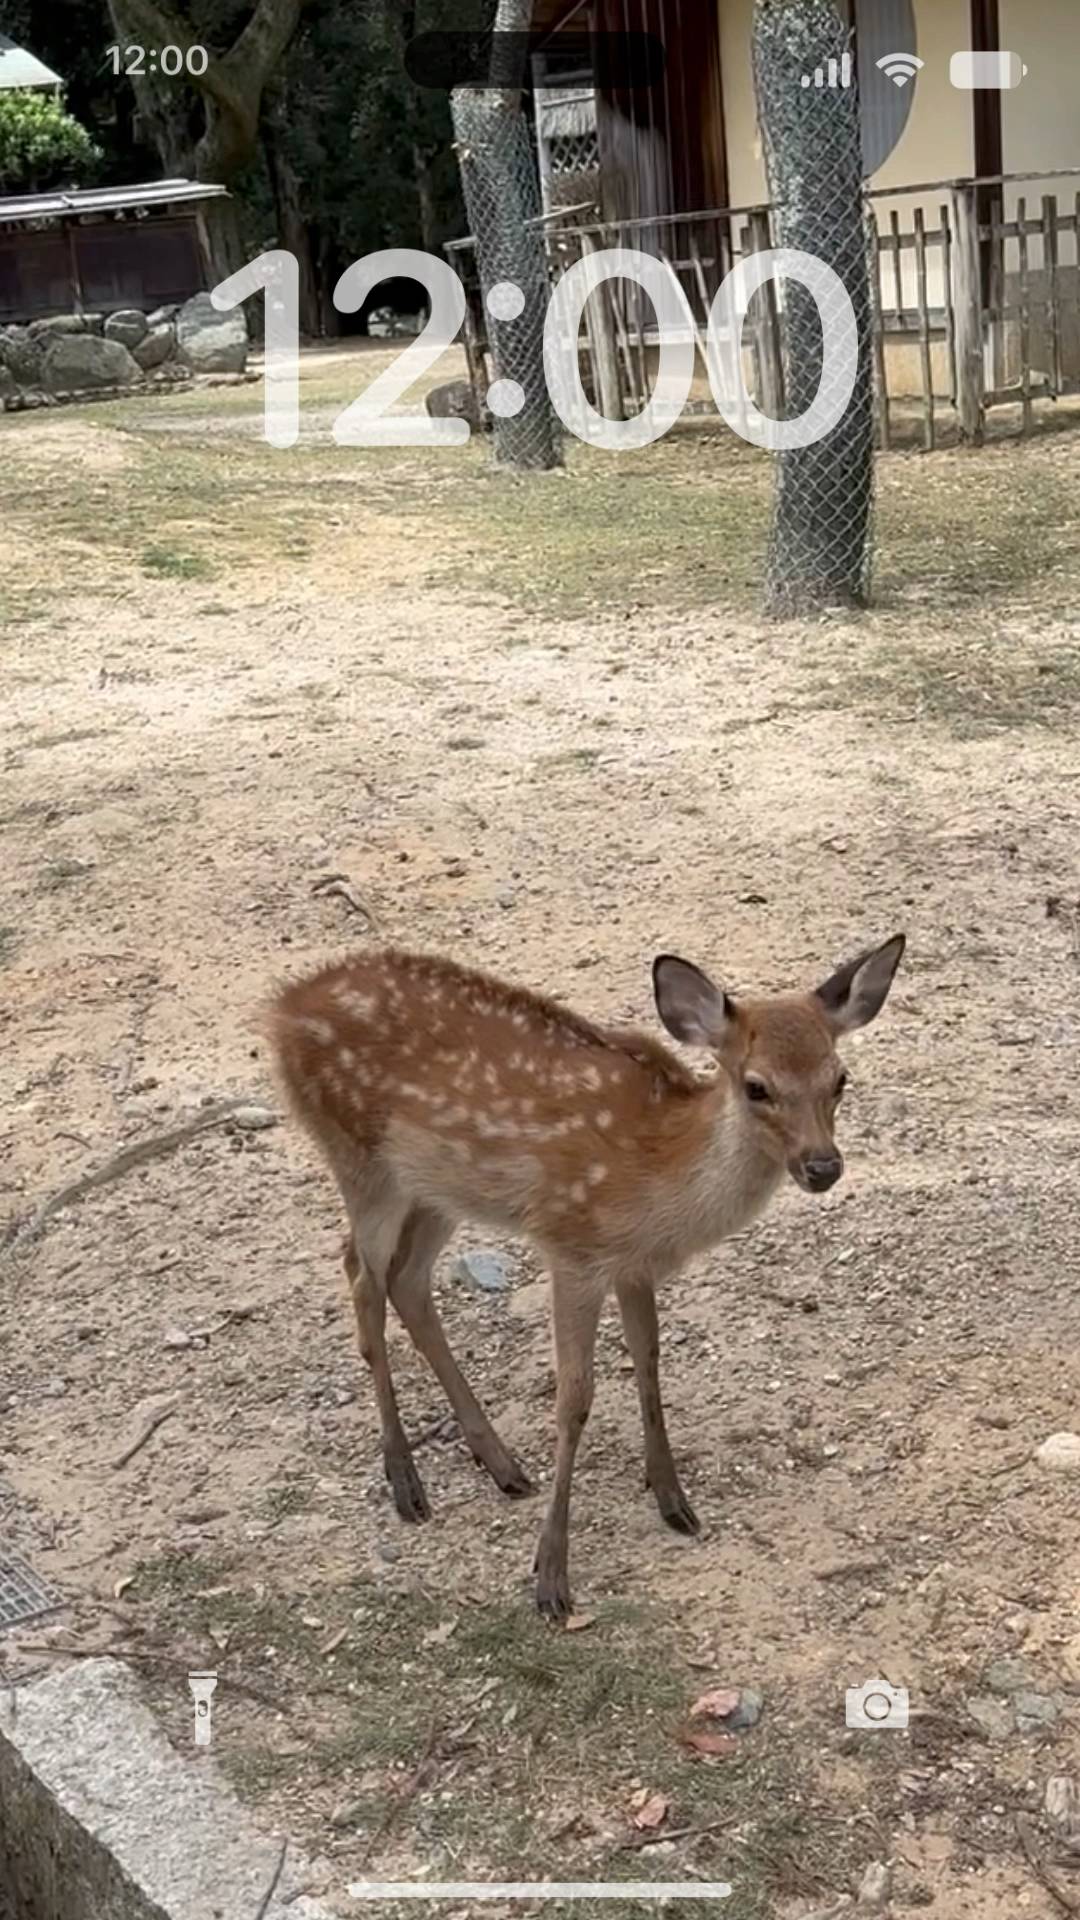 Nara cute deer 🦌🍁 Fondo de pantalla en vivo[ltE2WDsbyYP7yruGvDEu]